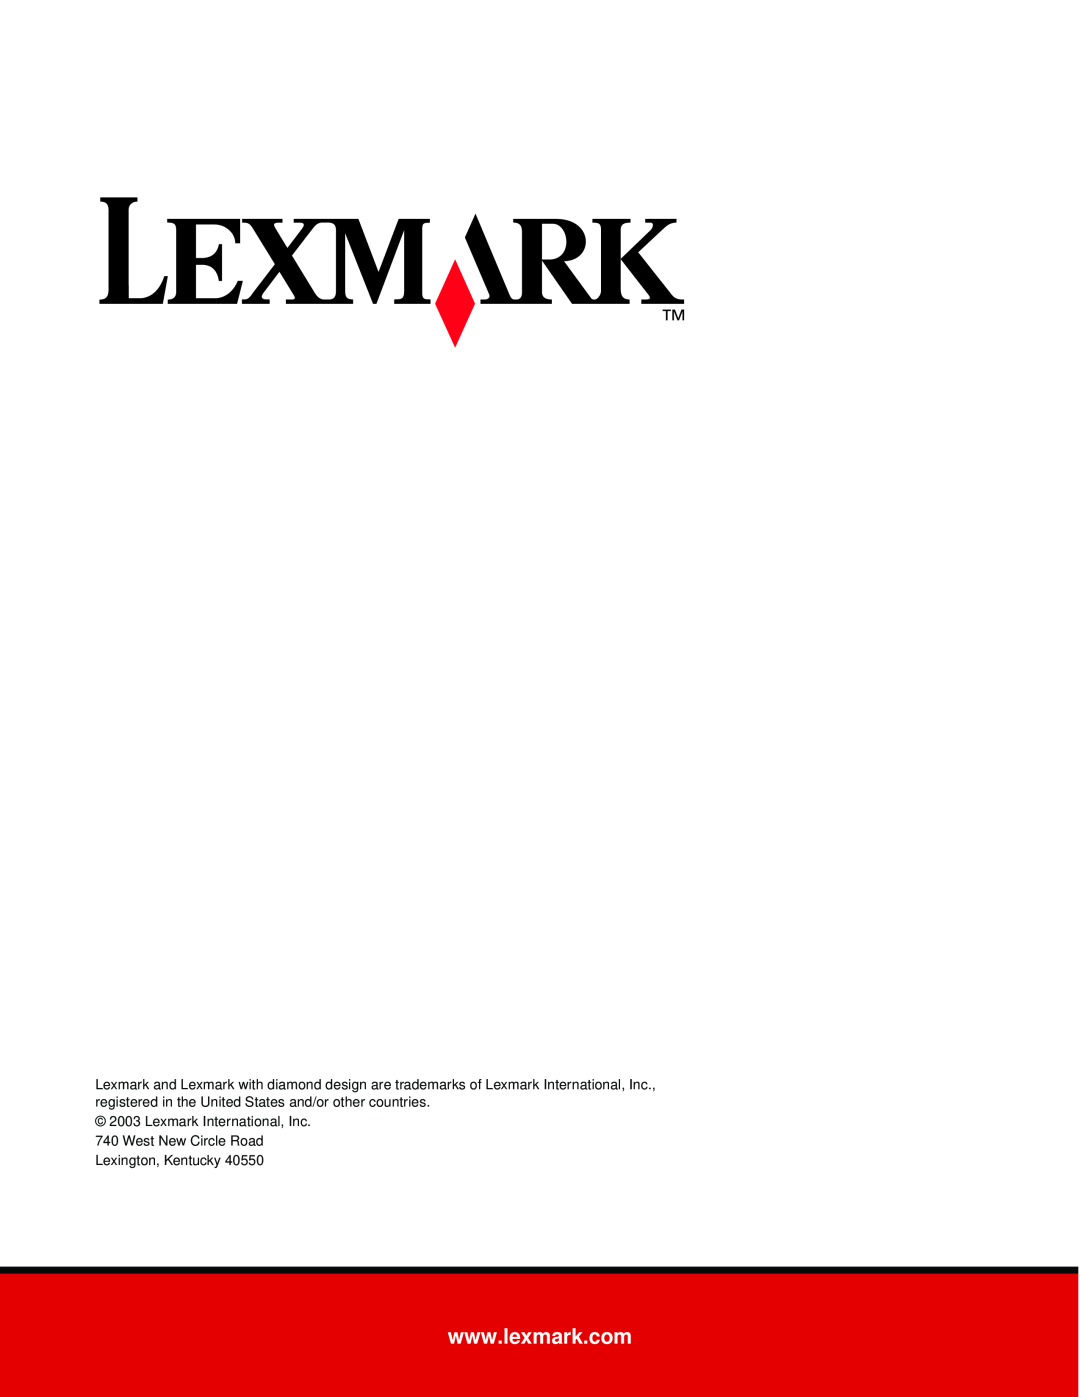 Lexmark X215 MFP manual Lexmark International, Inc, West New Circle Road Lexington, Kentucky 